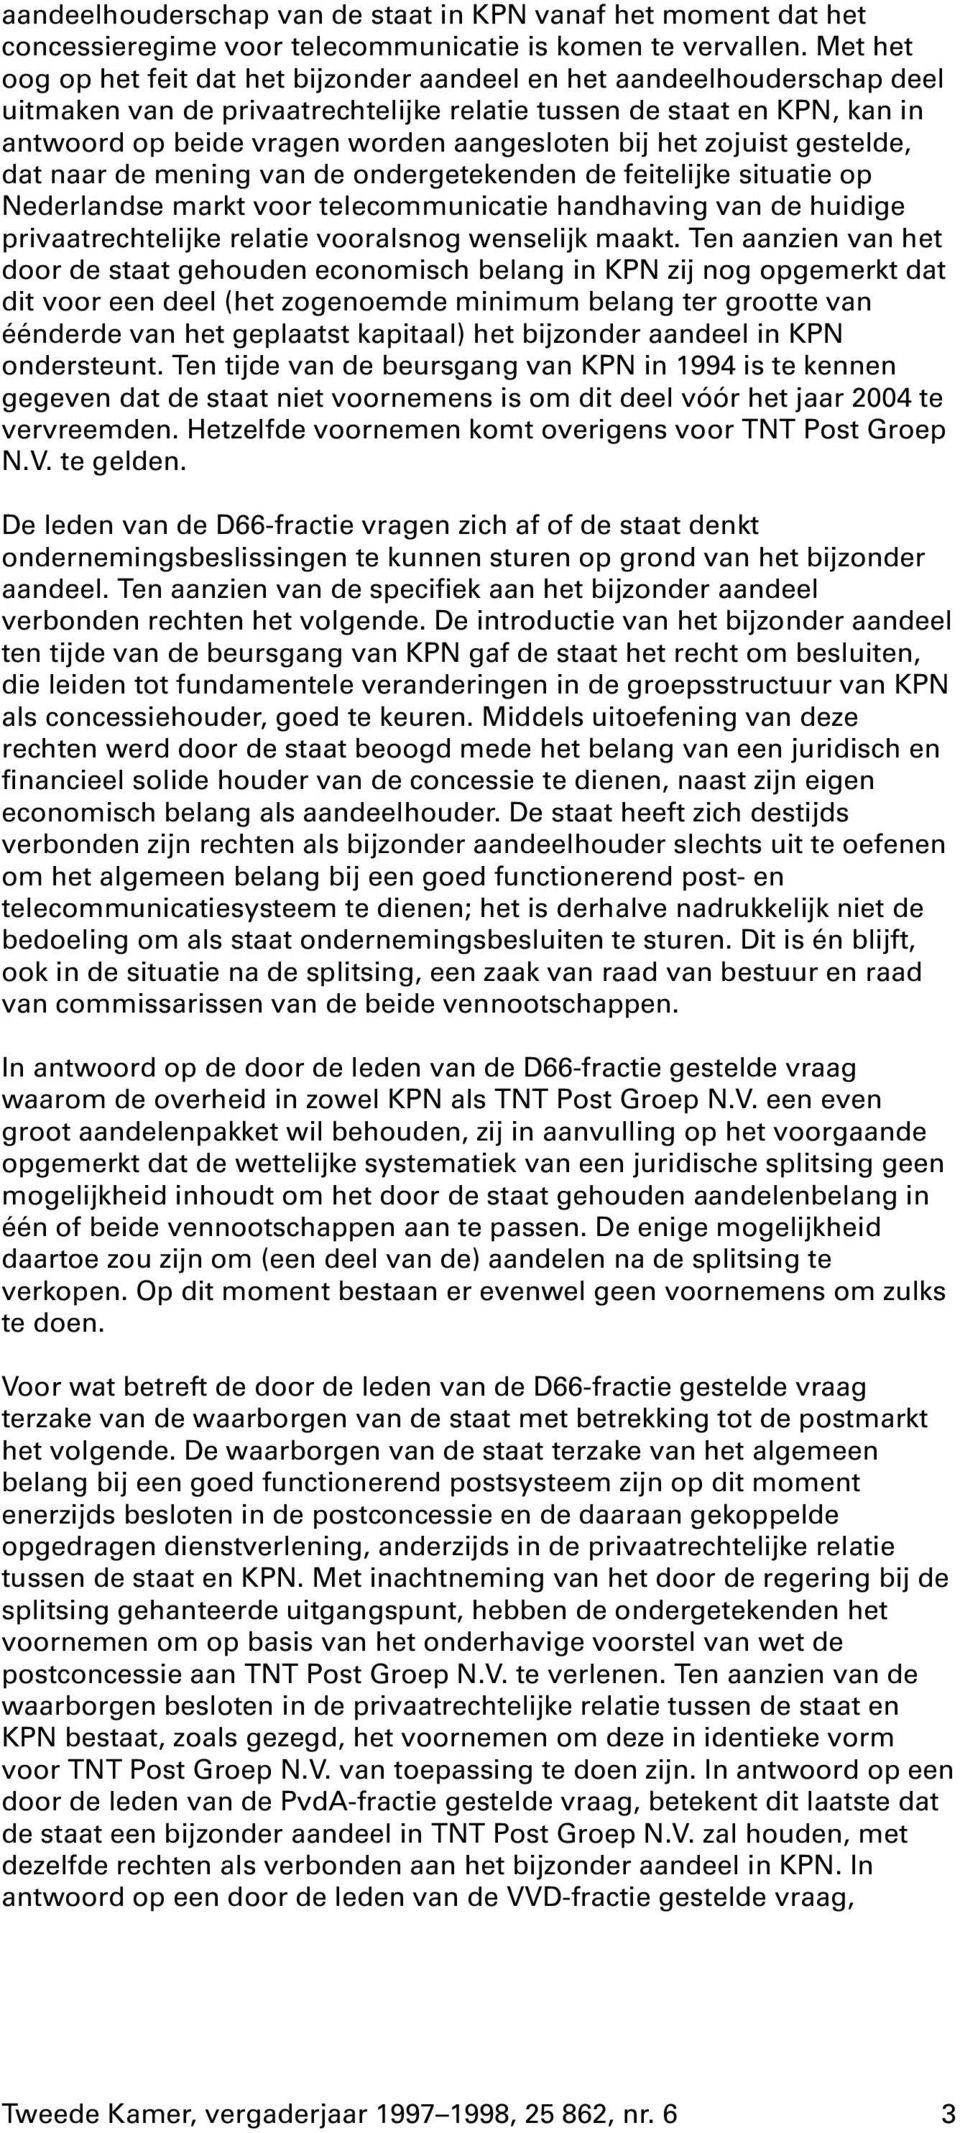 bij het zojuist gestelde, dat naar de mening van de ondergetekenden de feitelijke situatie op Nederlandse markt voor telecommunicatie handhaving van de huidige privaatrechtelijke relatie vooralsnog